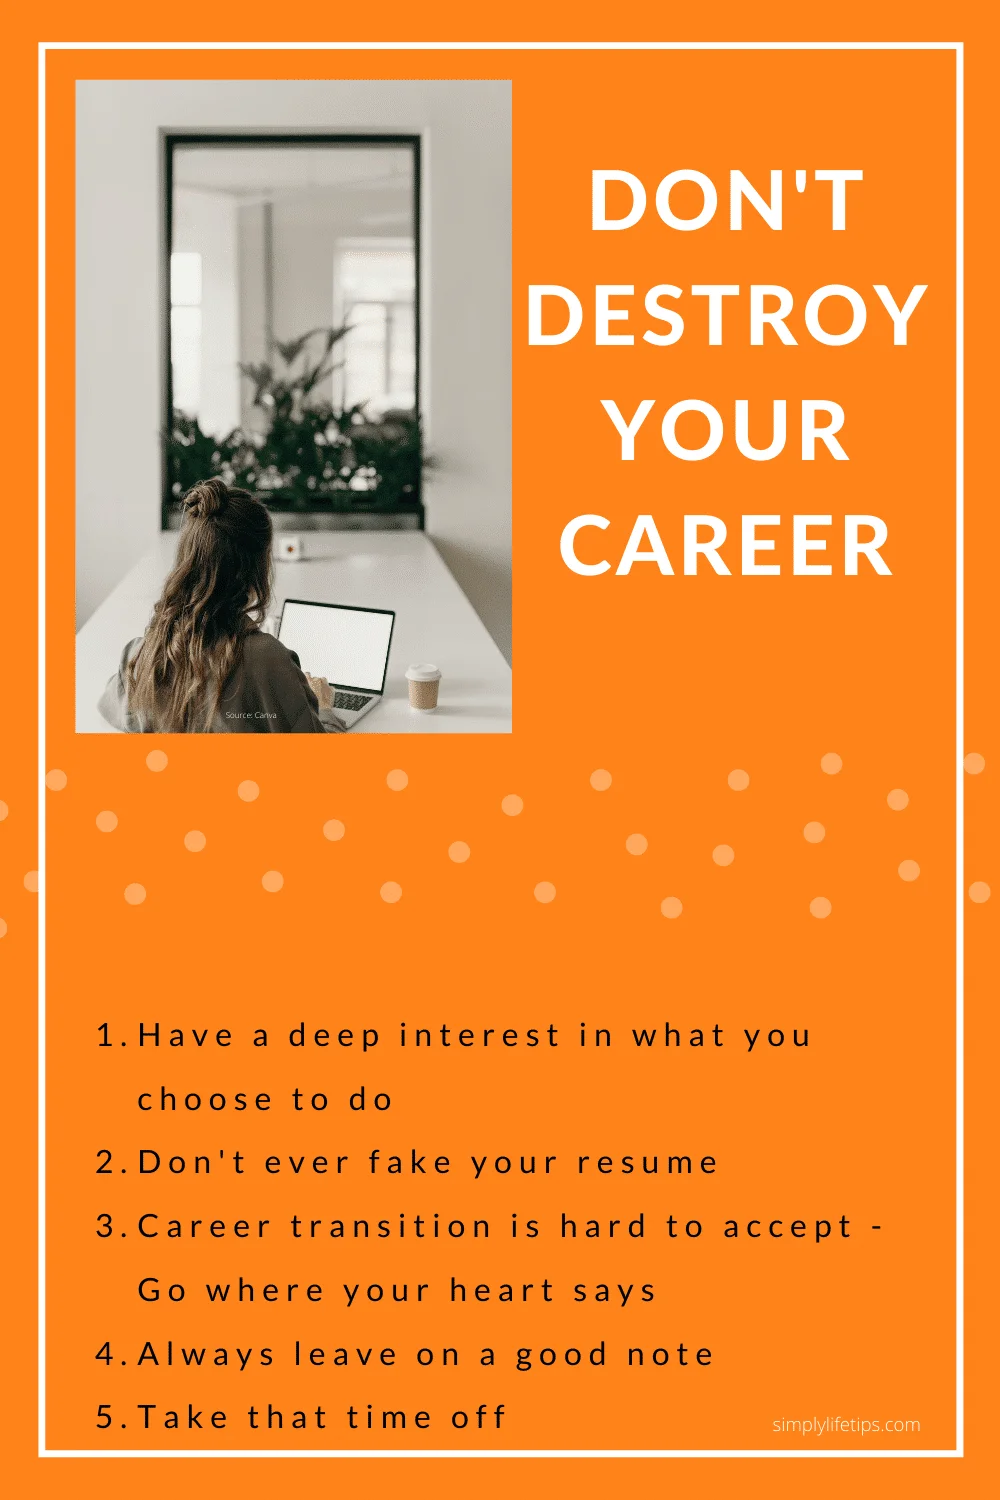 Destroy career